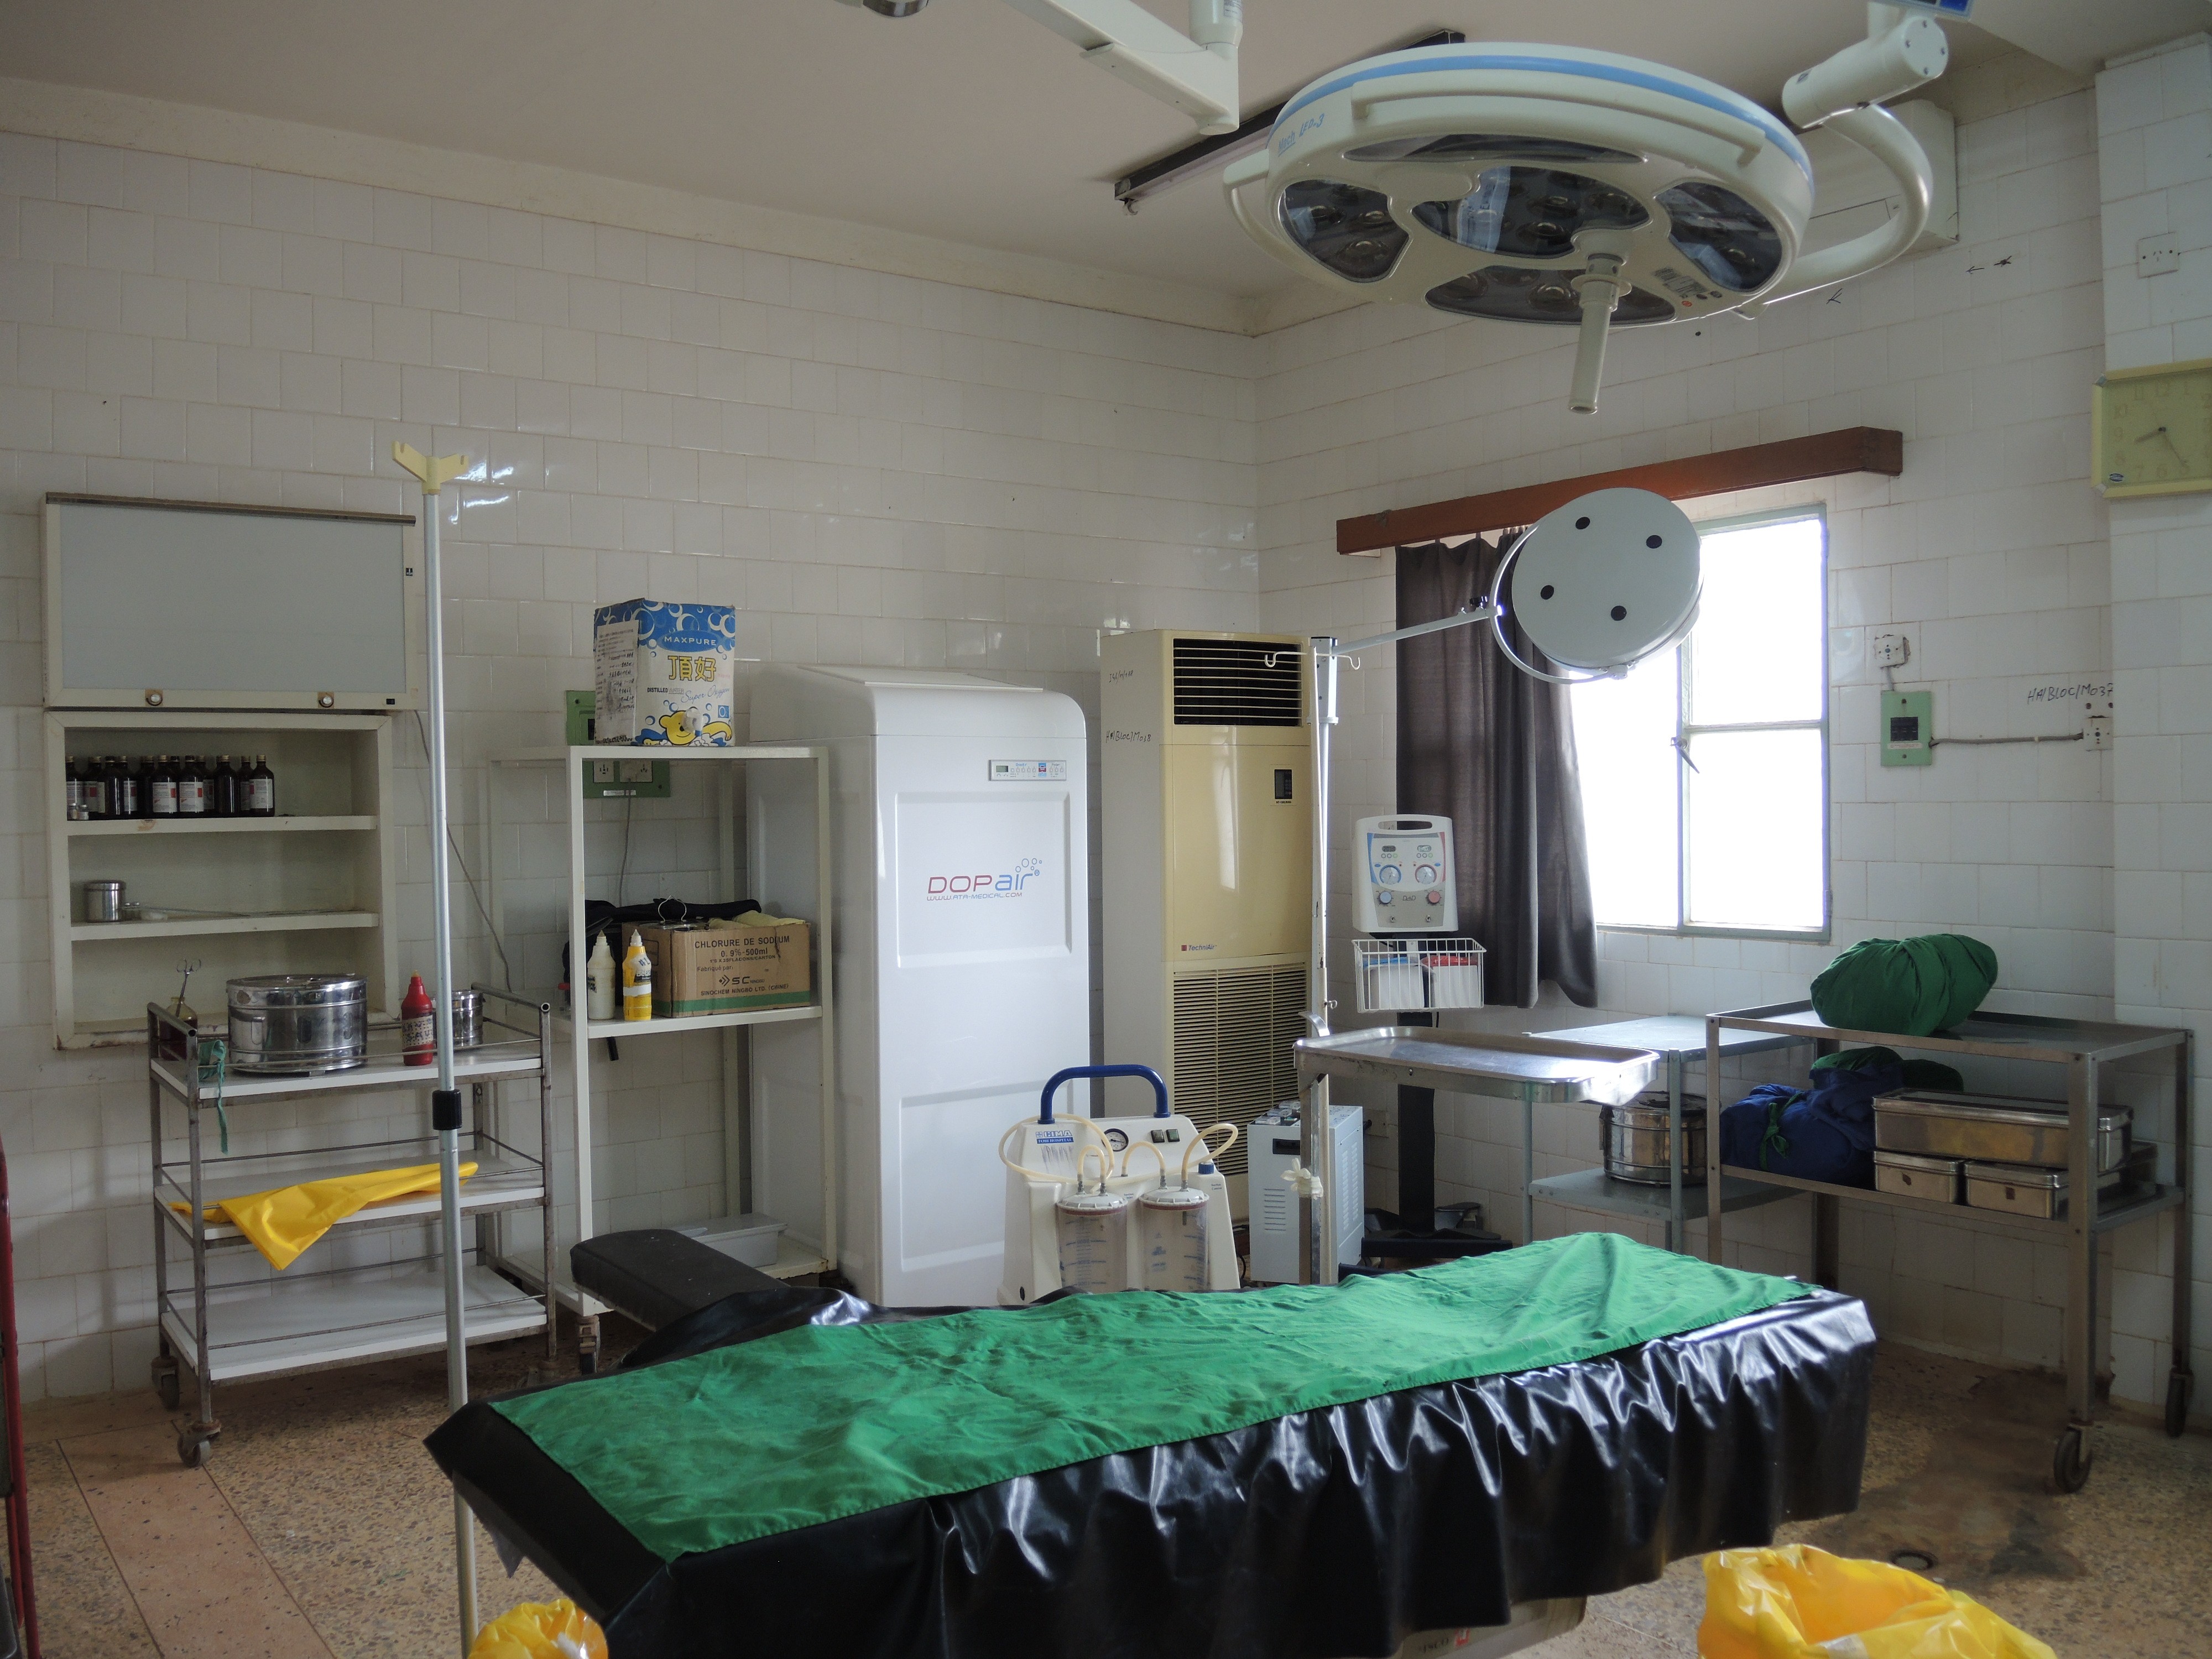 友誼醫院的手術室，20 年前連冷氣都沒有。如今，靠著臺灣國合會的捐贈，已有許多手術床及相關儀器，造福有需要的患者